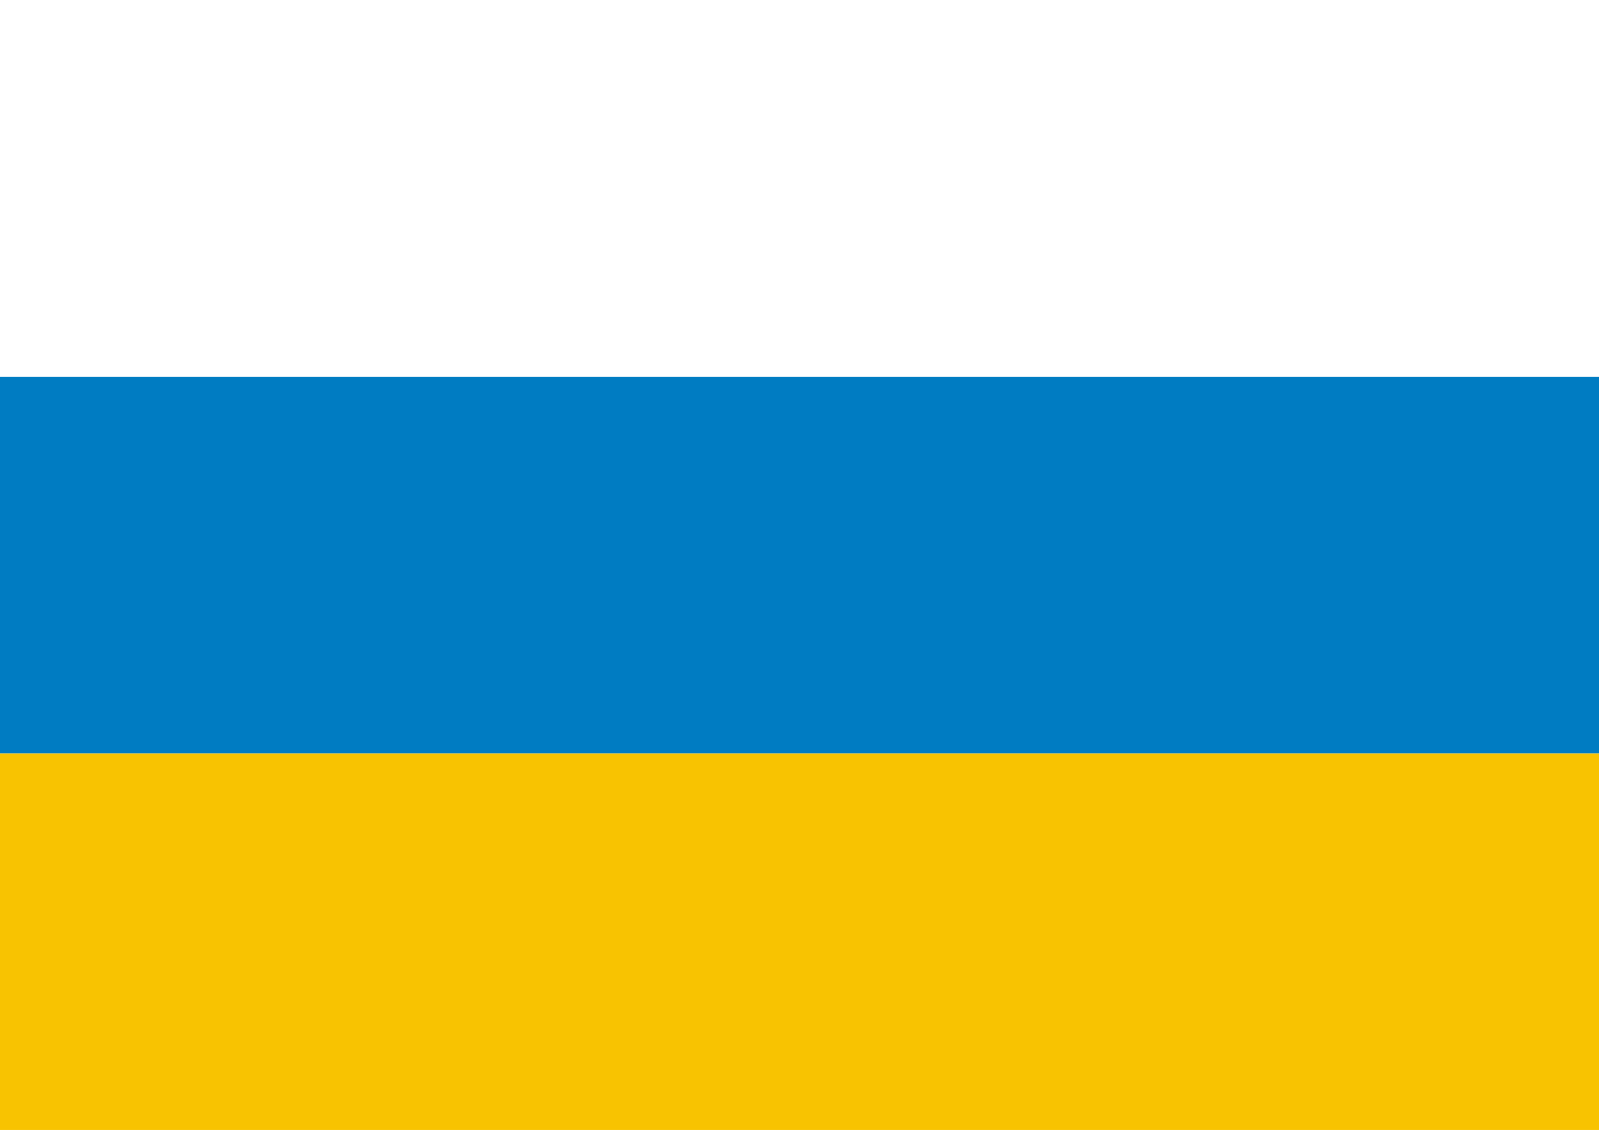 Флаг с цветами синий желтый. Флаг синий желтый белый. Альтернативный флаг РФ. Альтернативный флаг России. Флаг республиканской России альтернативный флаг.